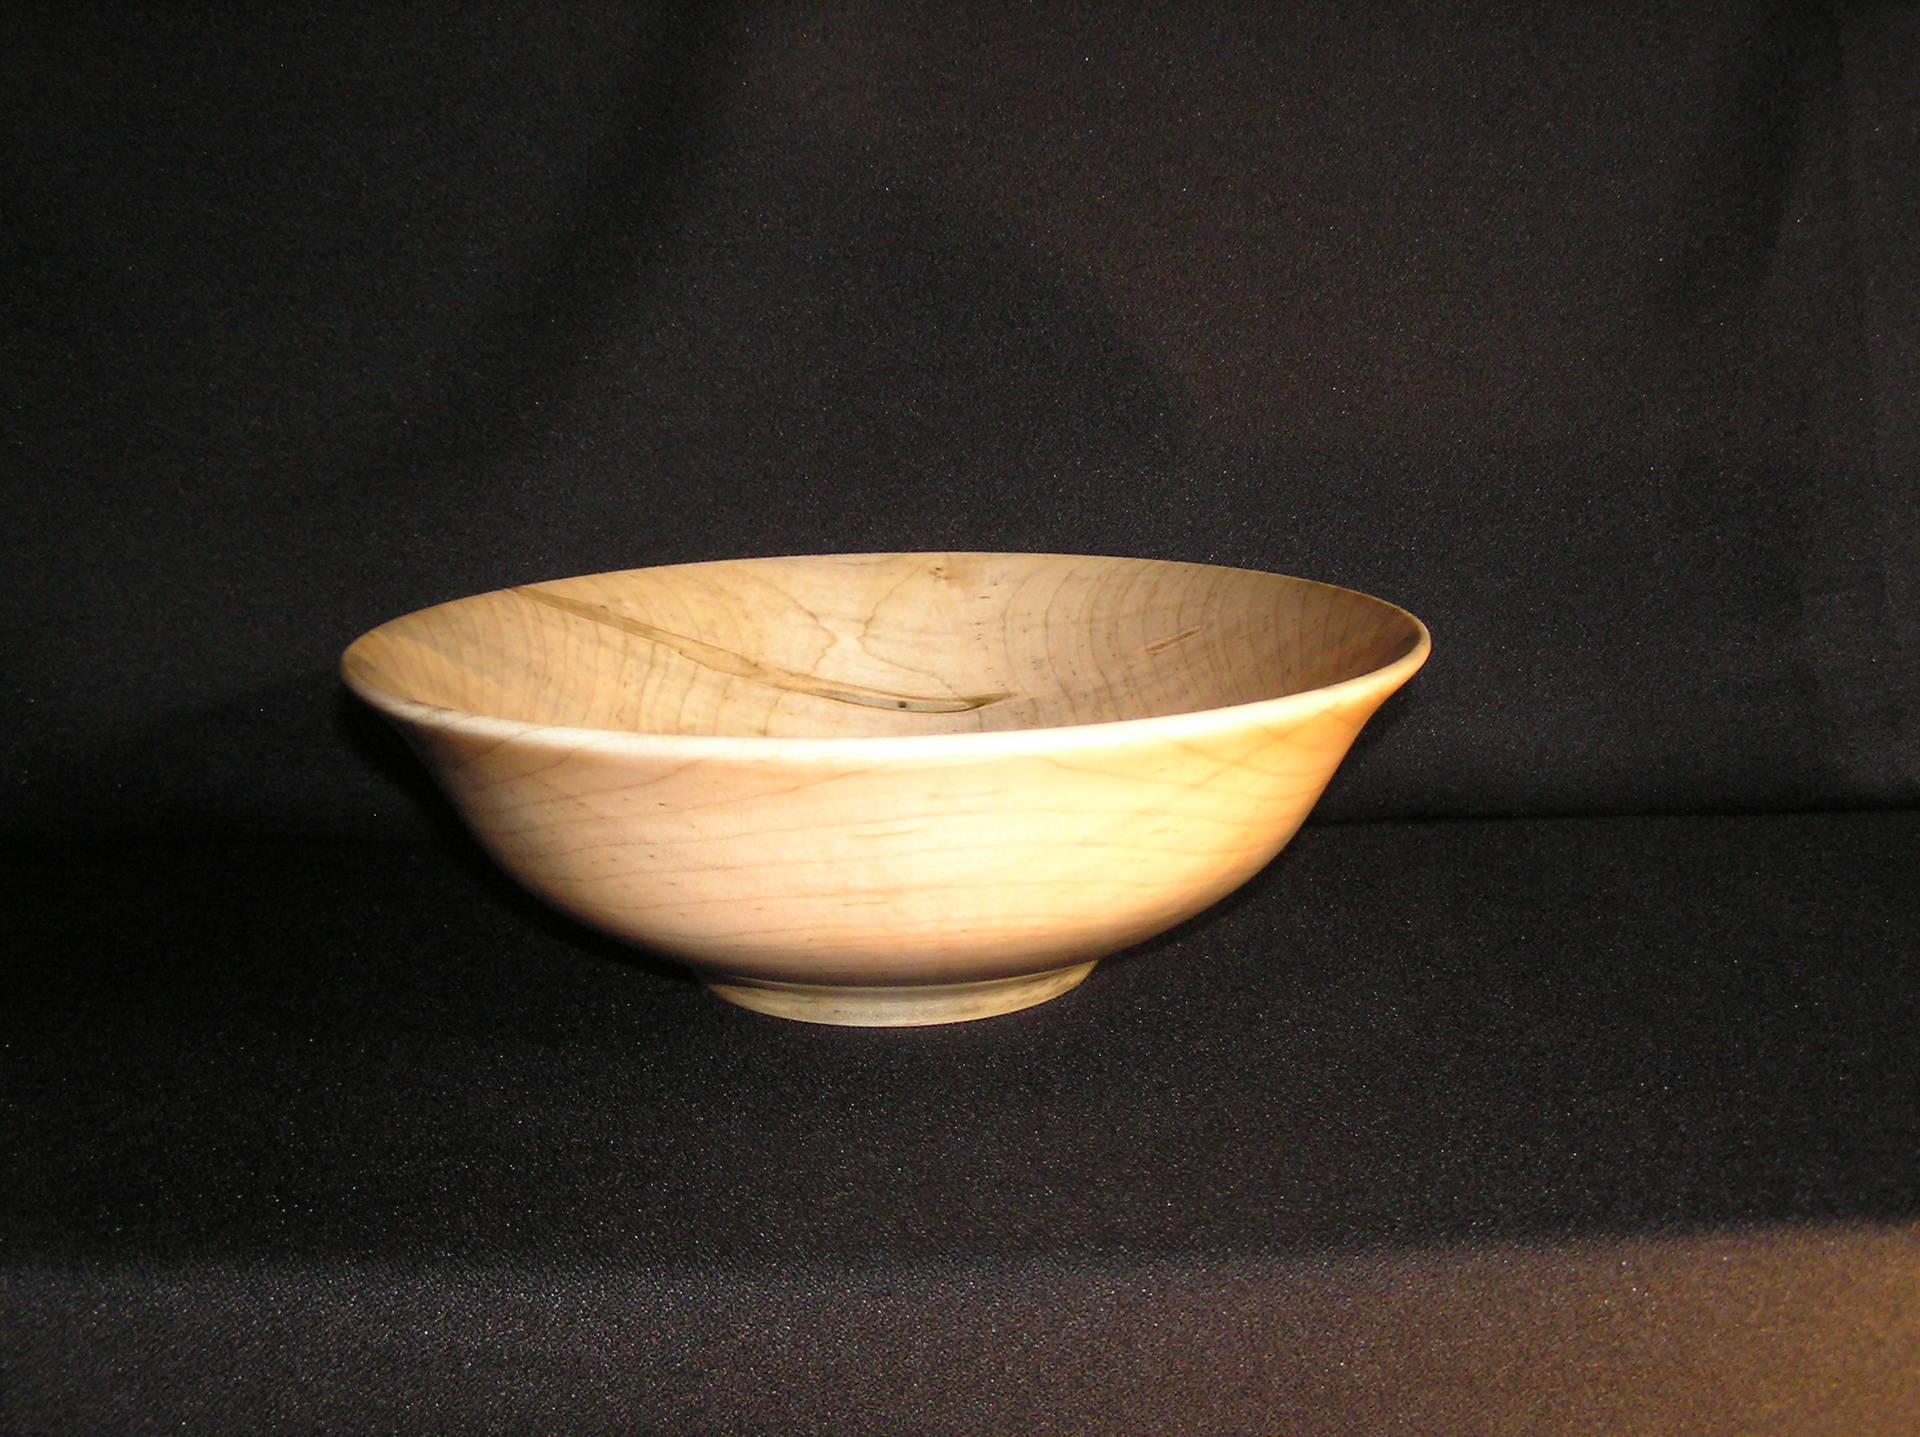 ambrosia maple bowl